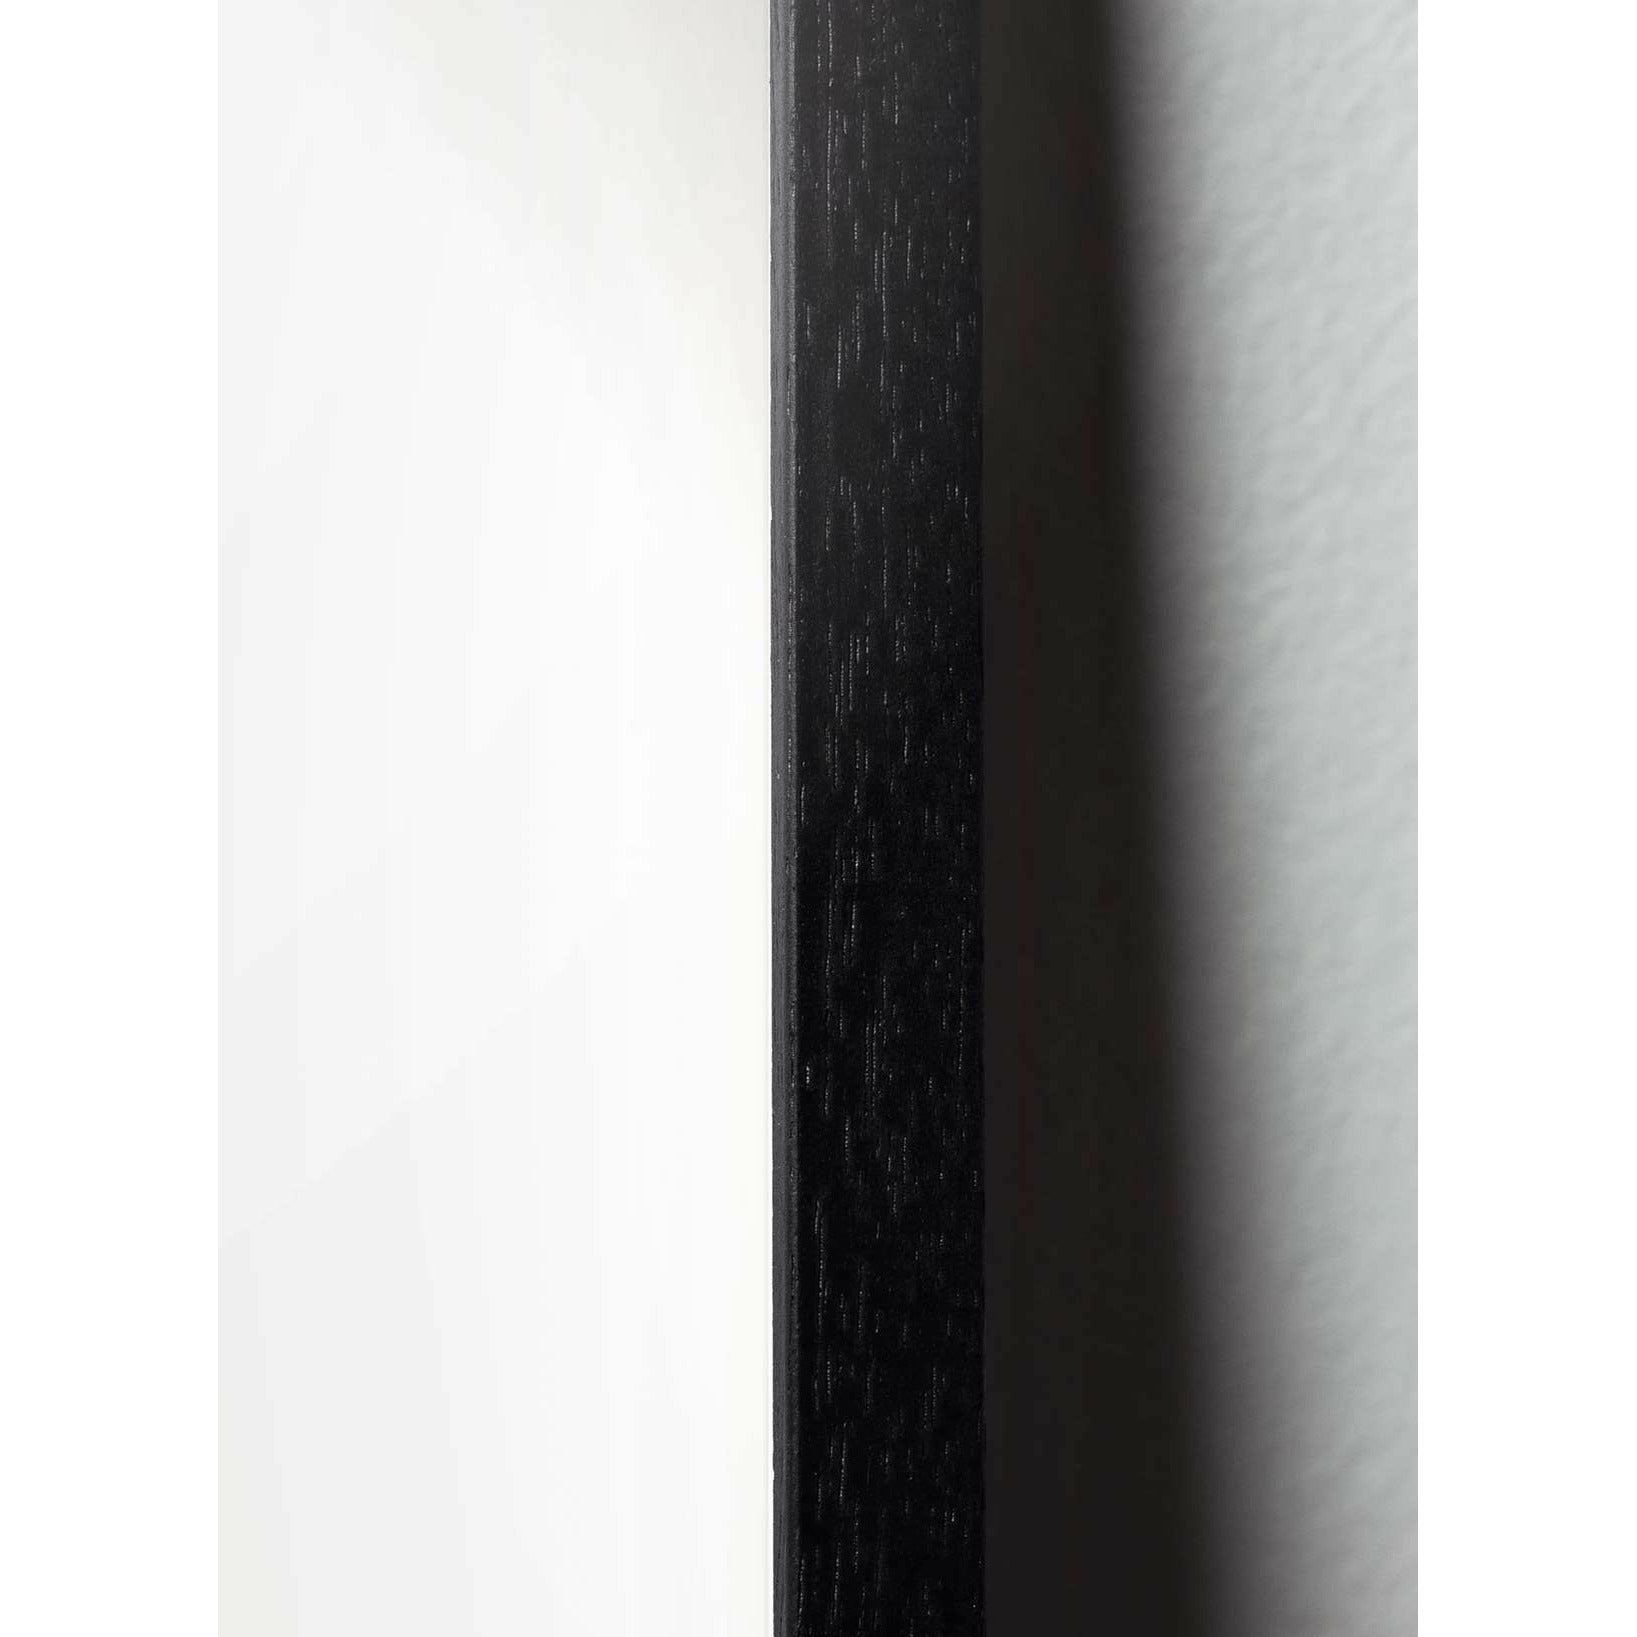 Pomysły plakat linii łabędzia, rama w czarnym lakierowanym drewnie A5, białe tło